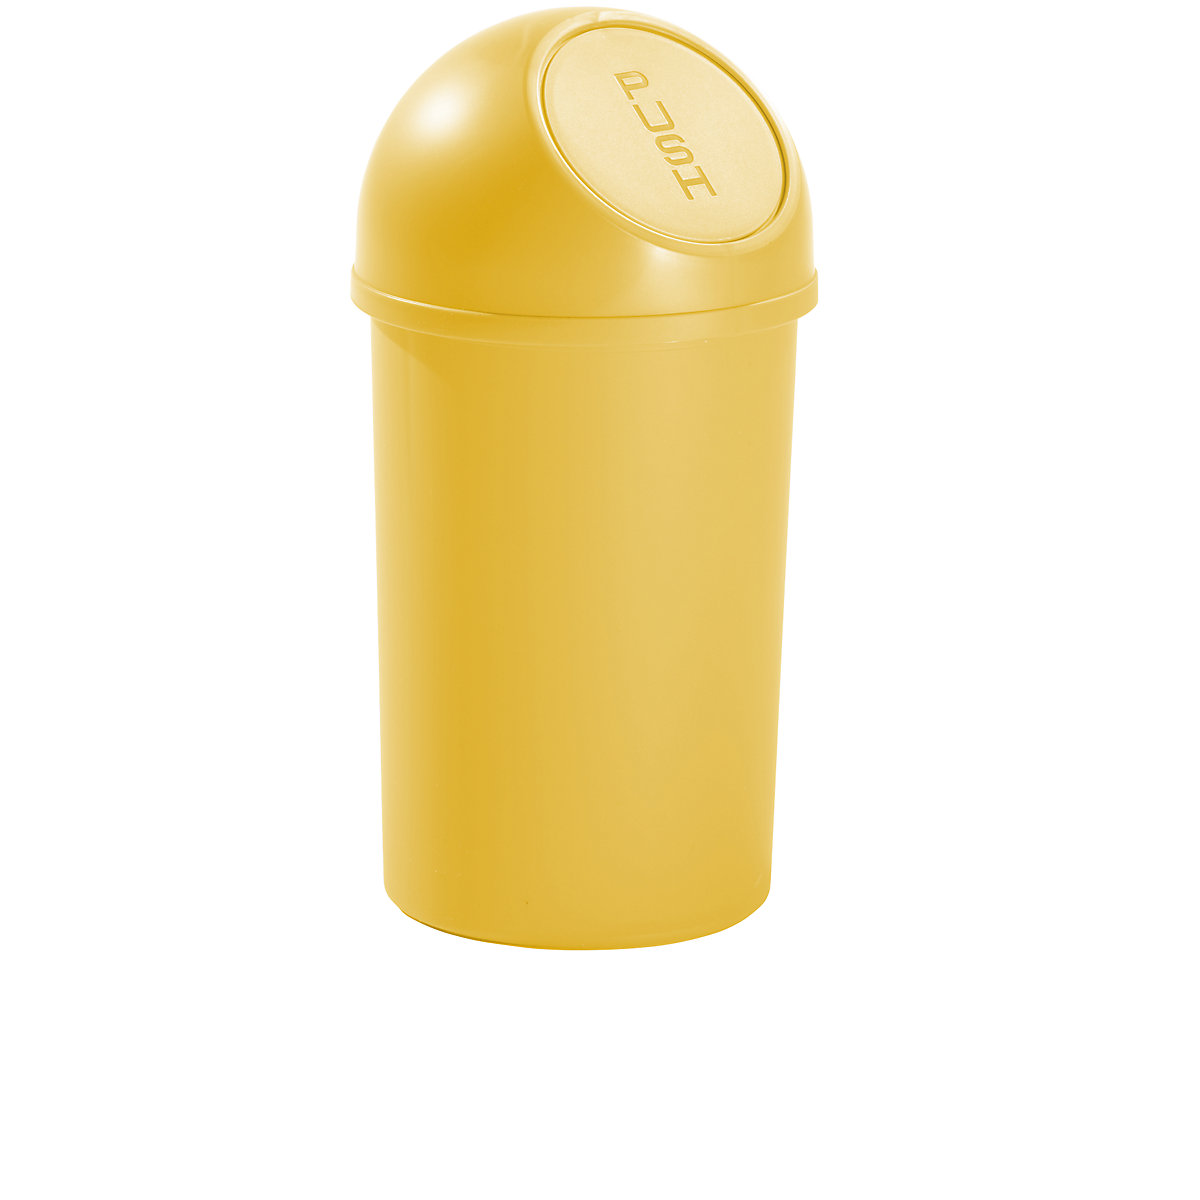 helit – Samozavírací nádoba na odpadky z plastu, objem 13 l, v x Ø 490 x 252 mm, žlutá, bal.j. 6 ks